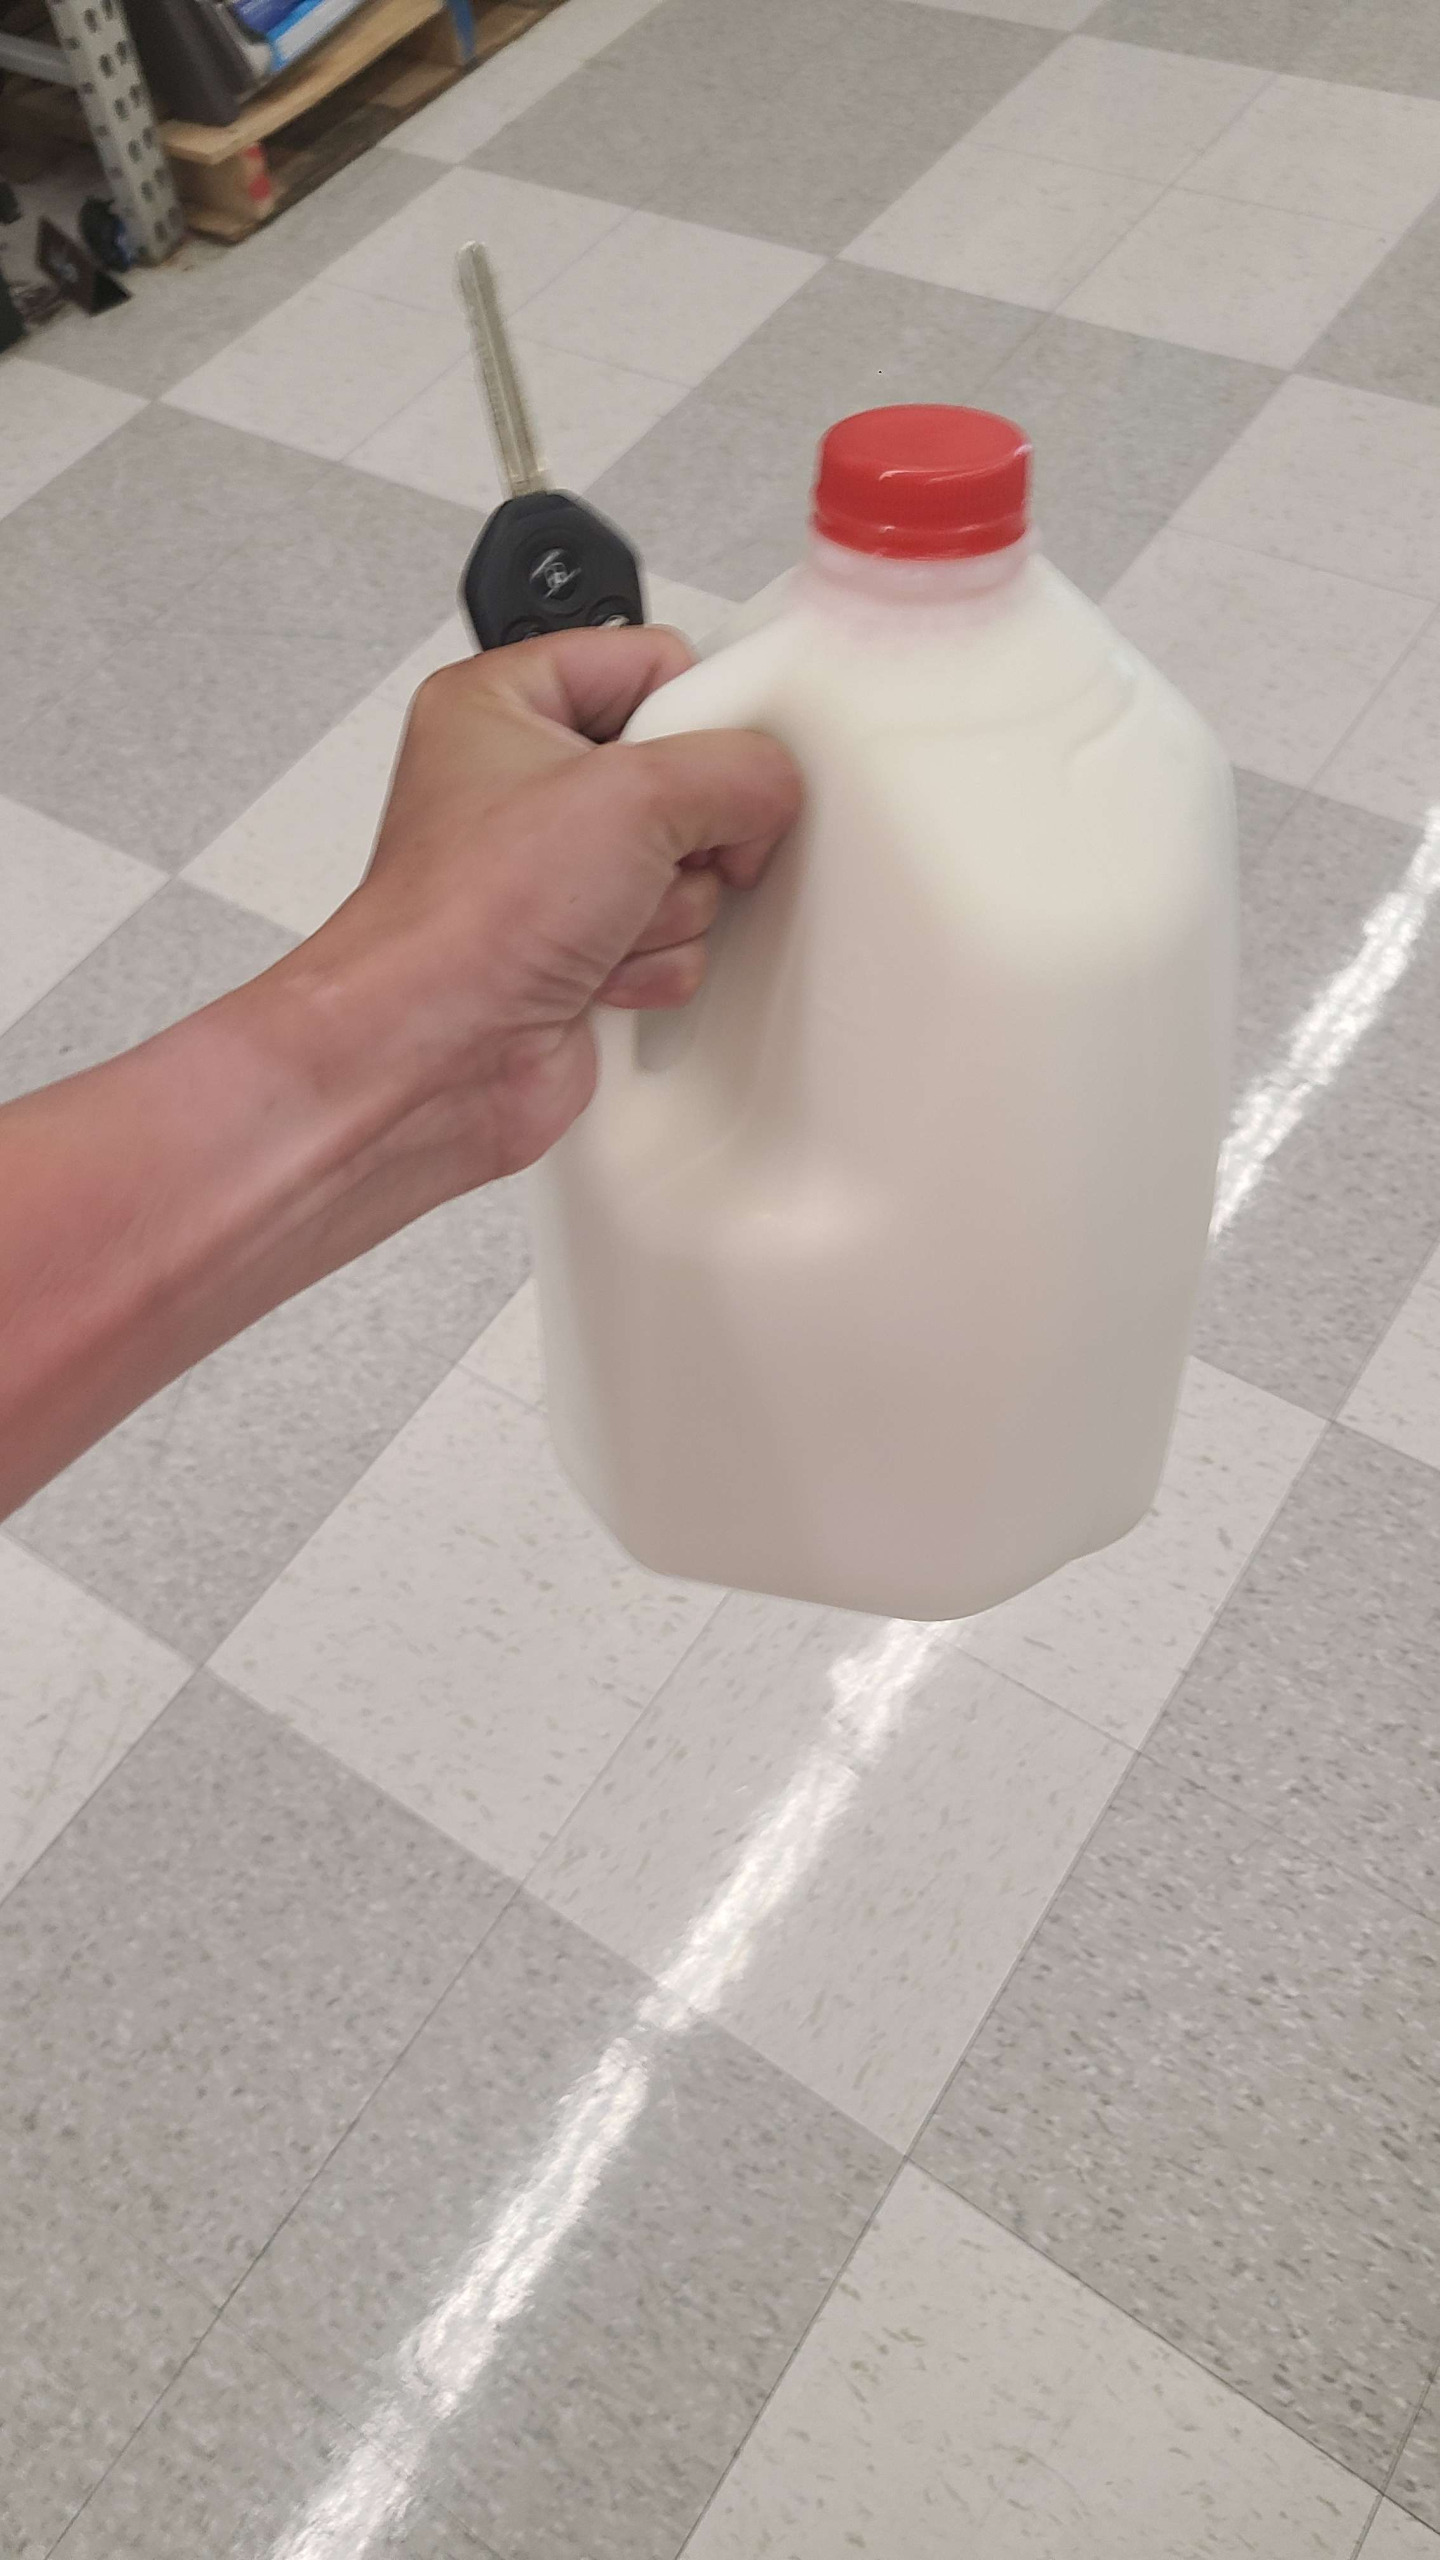 milk Blank Meme Template